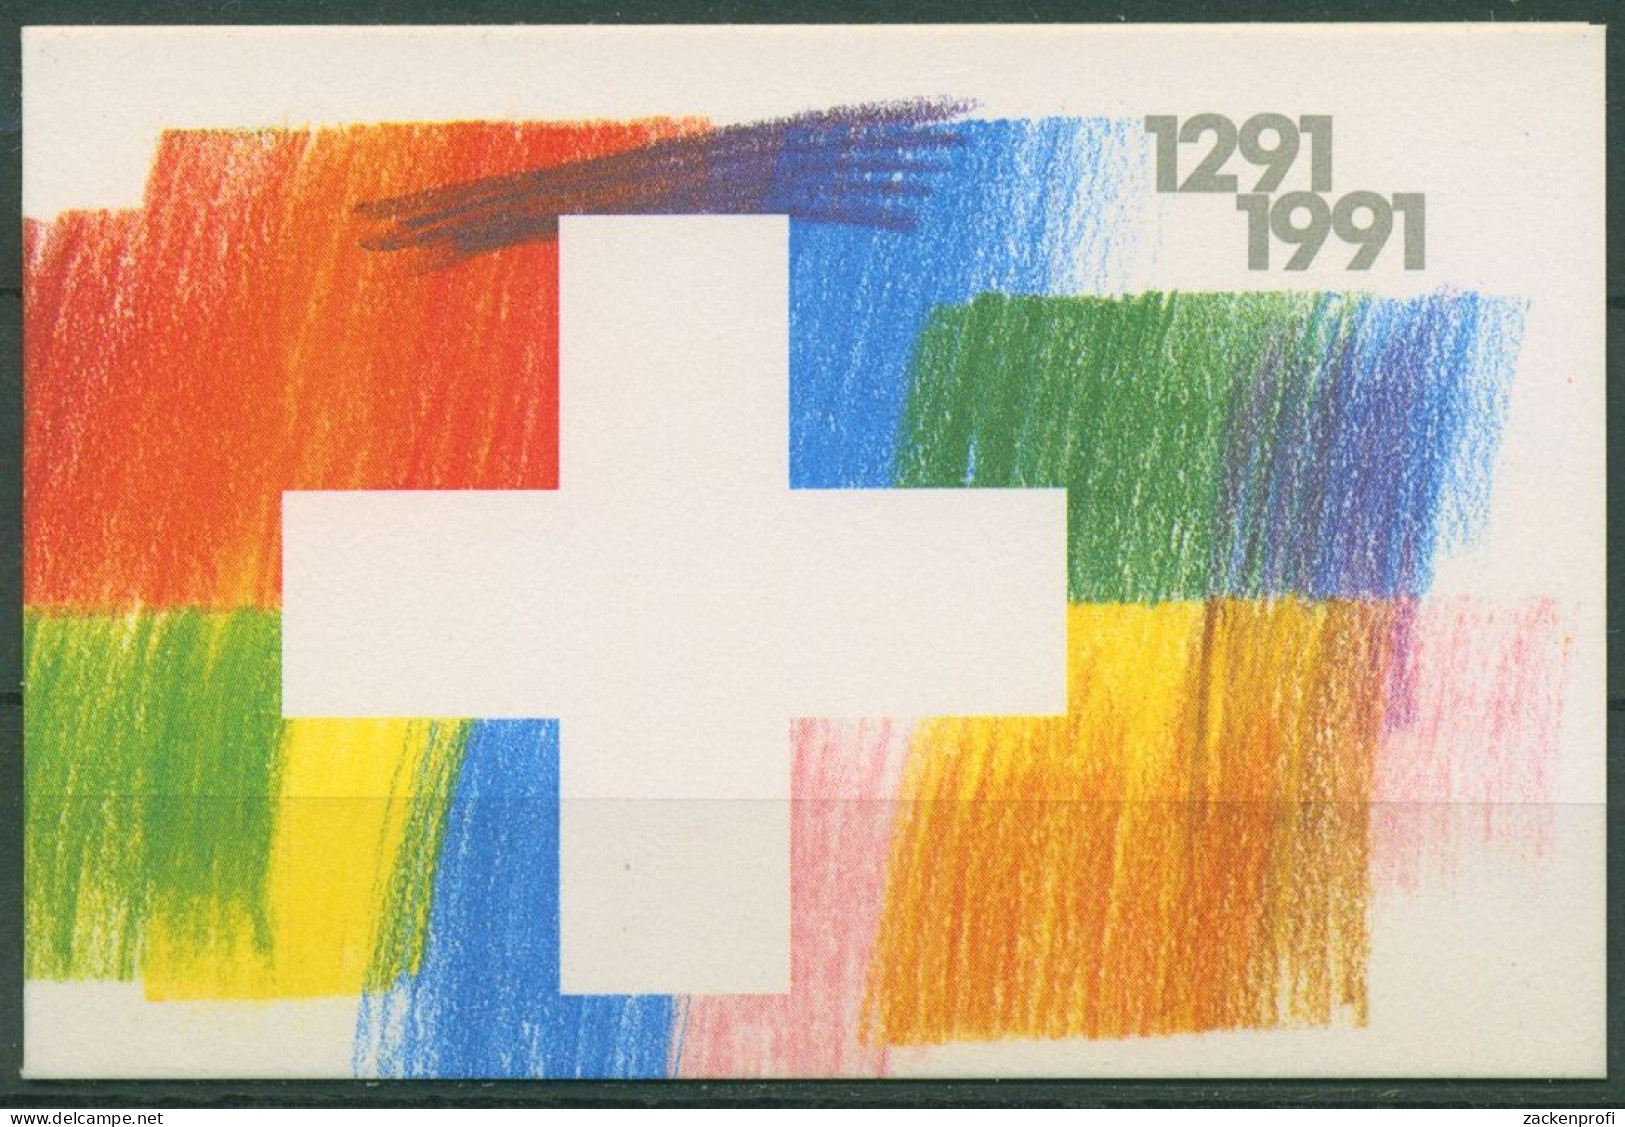 Schweiz 1991 Eidgenossenschaft Markenheftchen 89 Postfrisch (C62174) - Cuadernillos